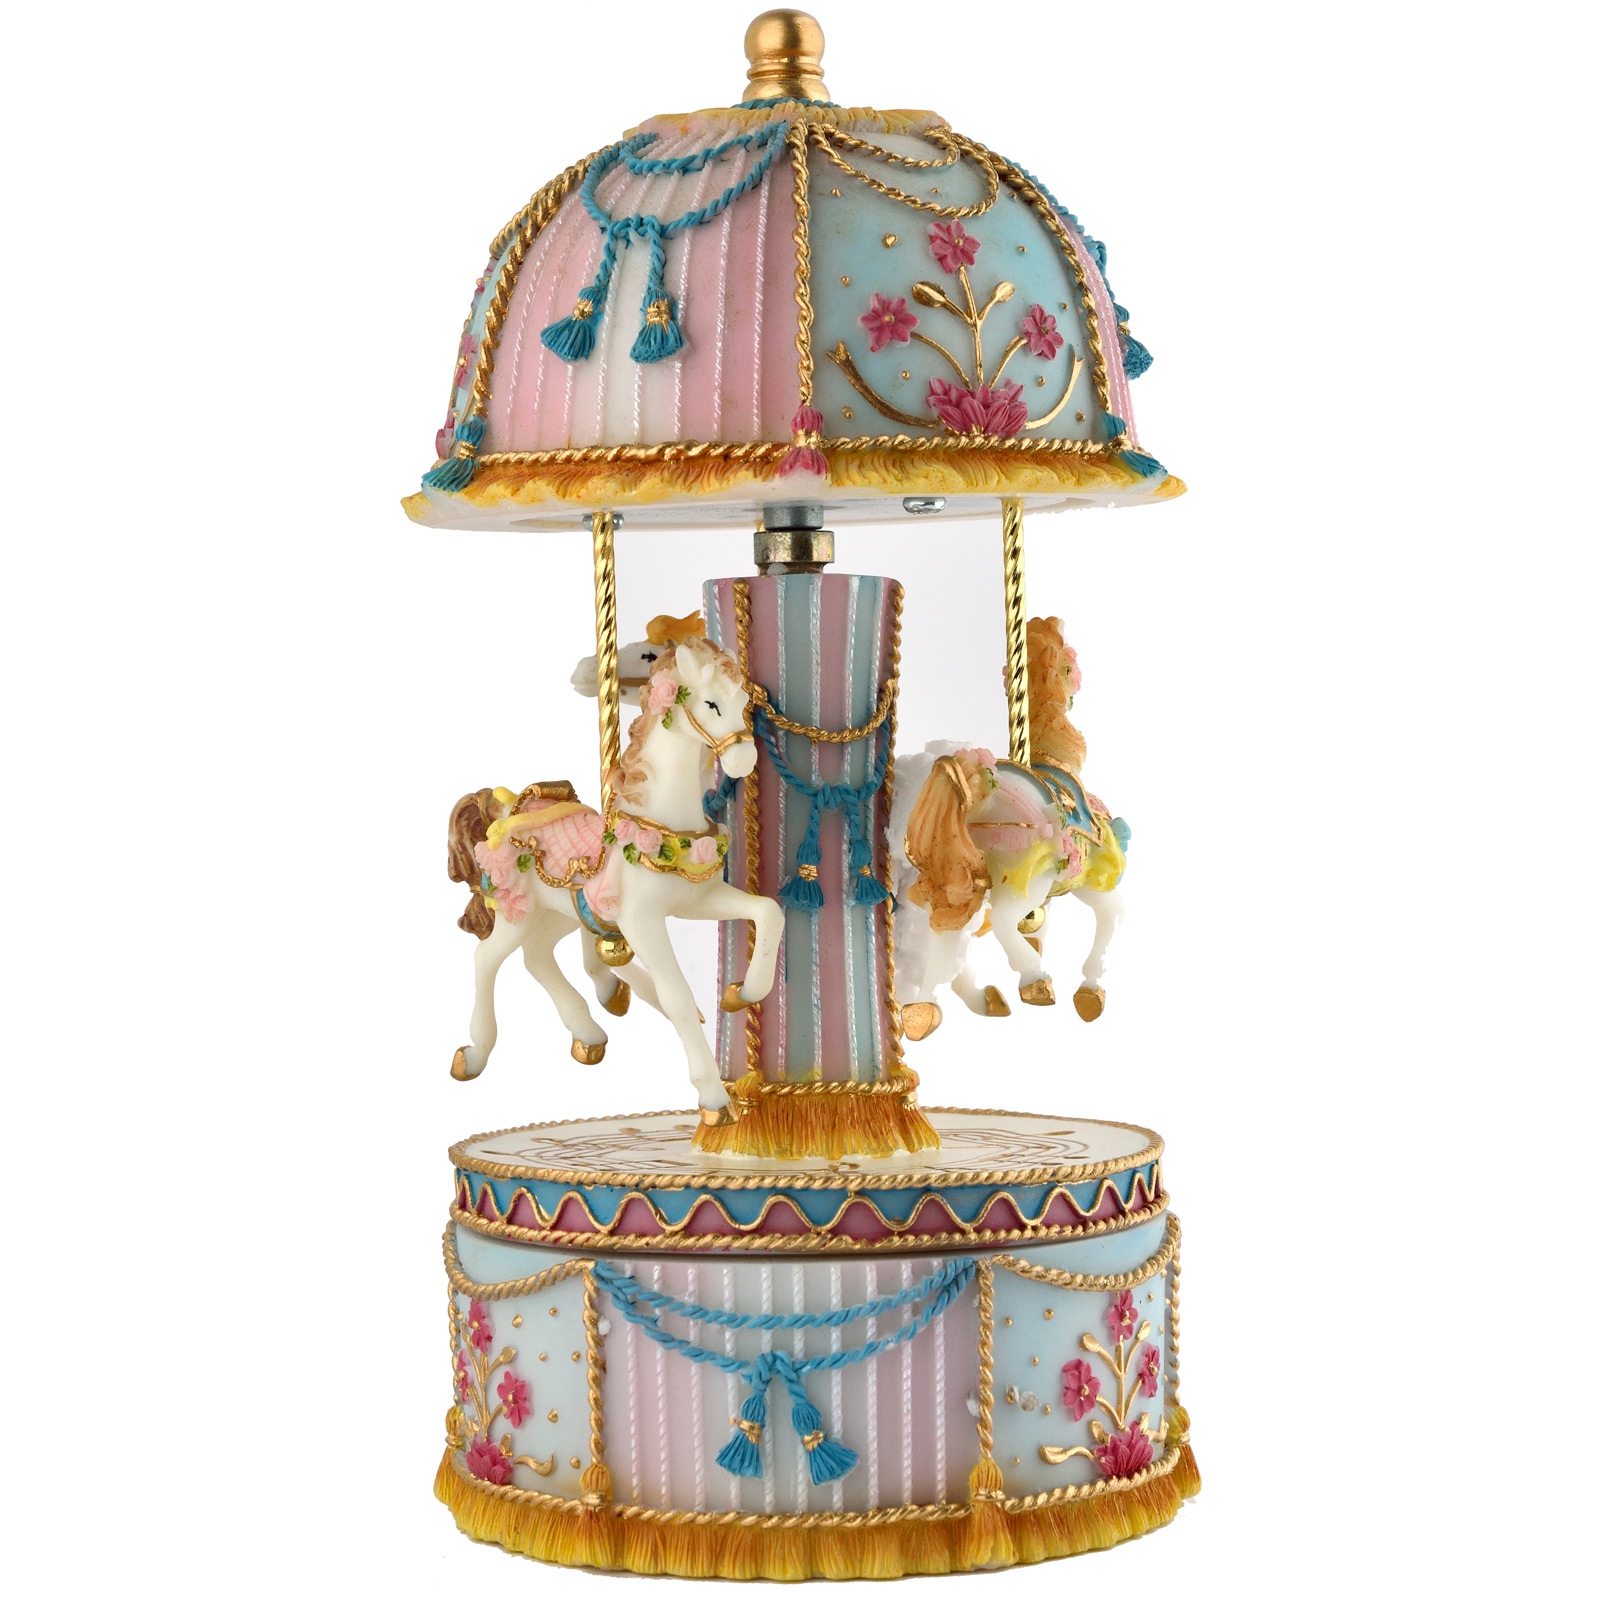 Petite boîte à musique carrousel bleu et rose avec trois chevaux en bois qui tournent à la mode idéale comme jouet ou cadeau de Noël.